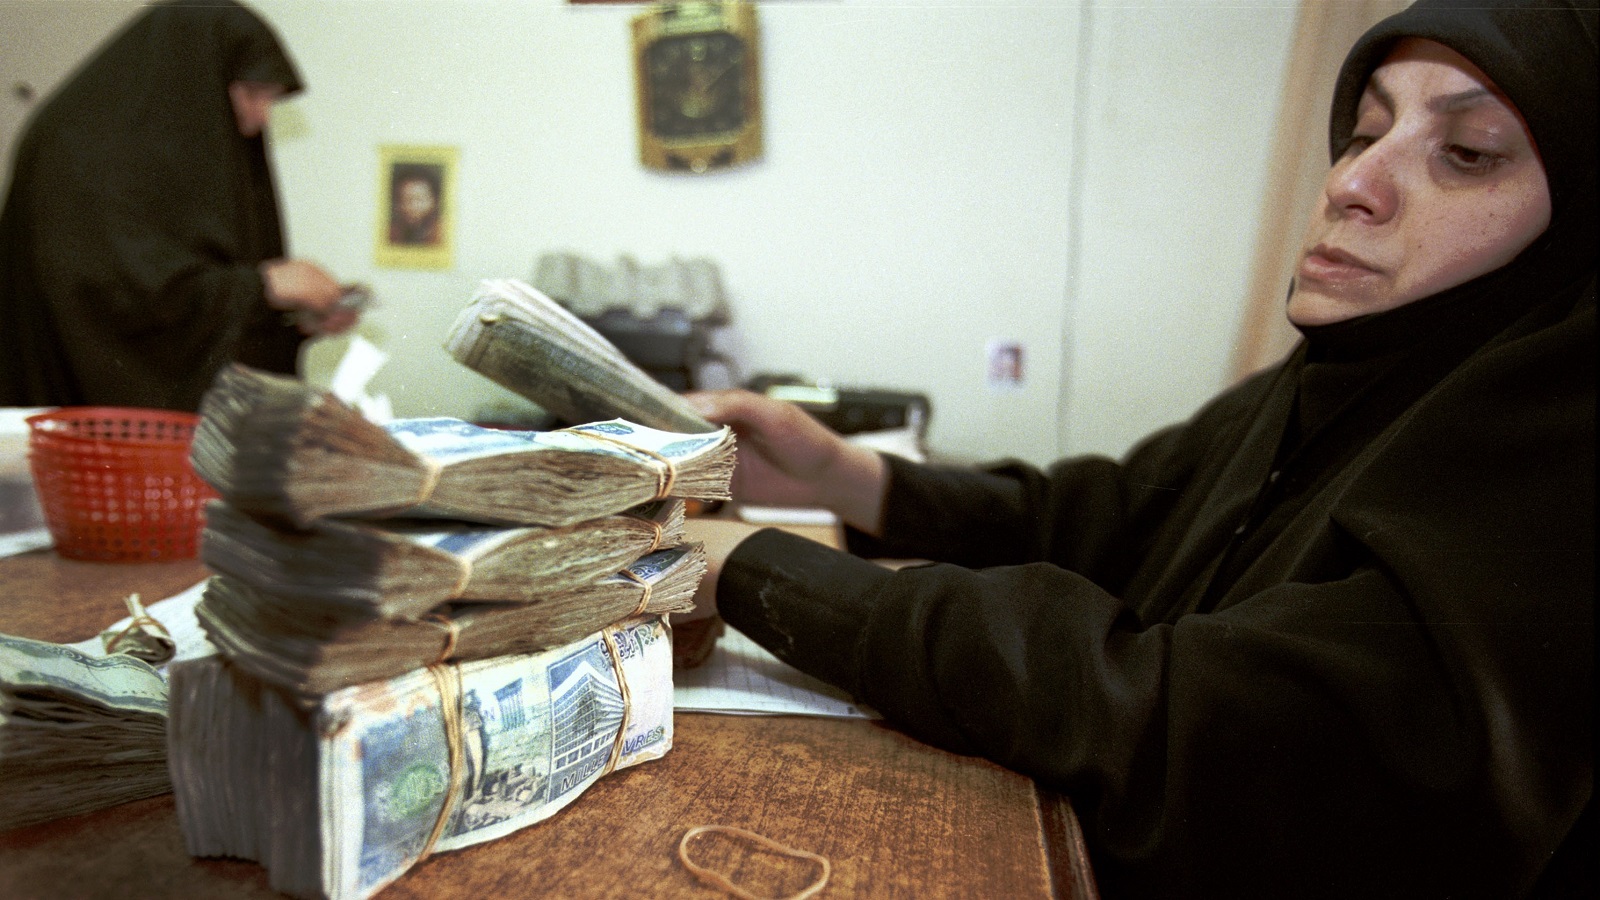 أزمة حزب الله المالية: خفض الموازنة لاستمرار آلة الحرب